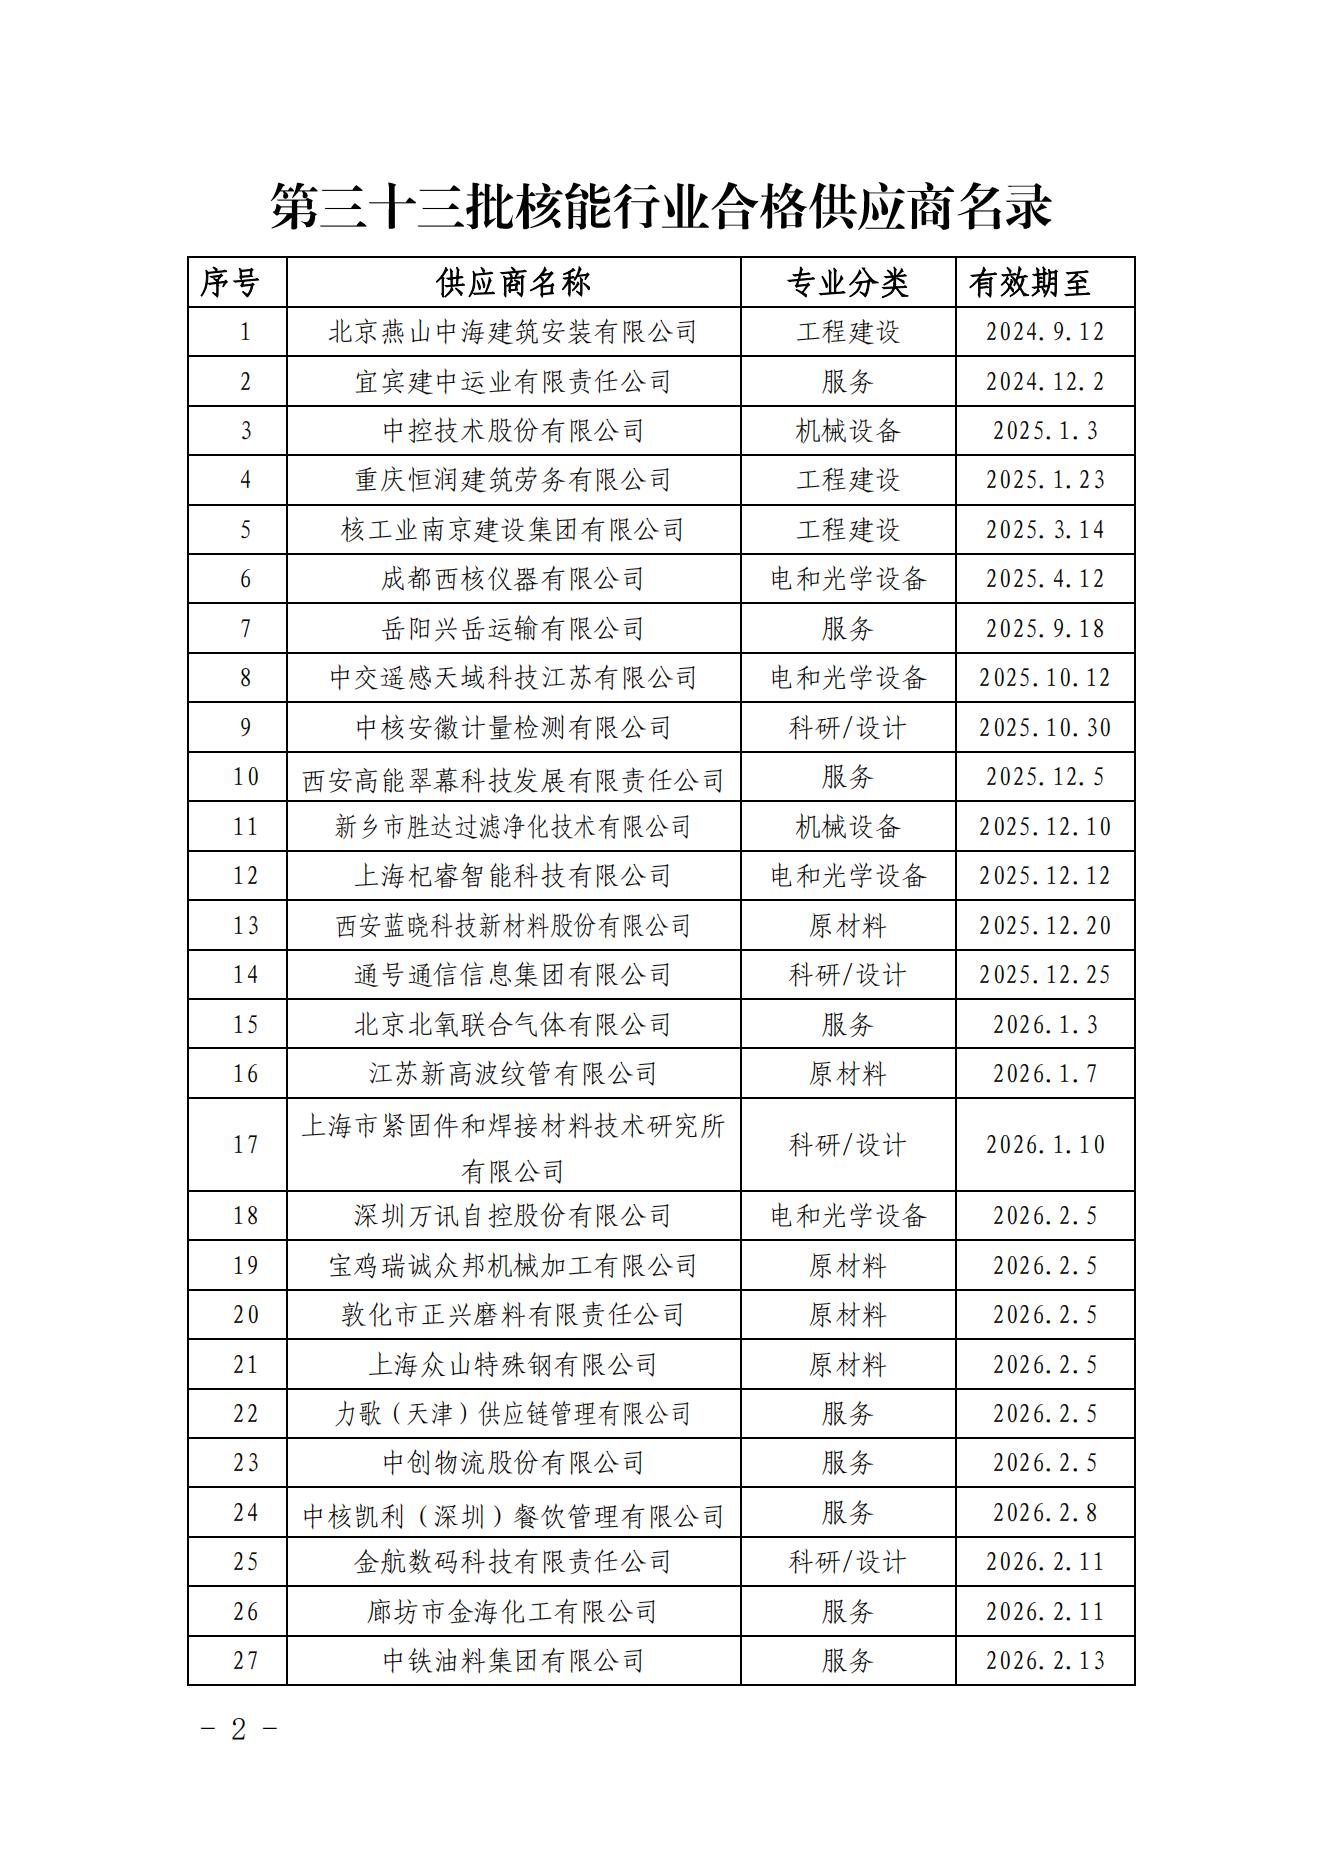 中国核能行业协会关于发布第三十三批核能行业合格供应商名录的公告_01.jpg